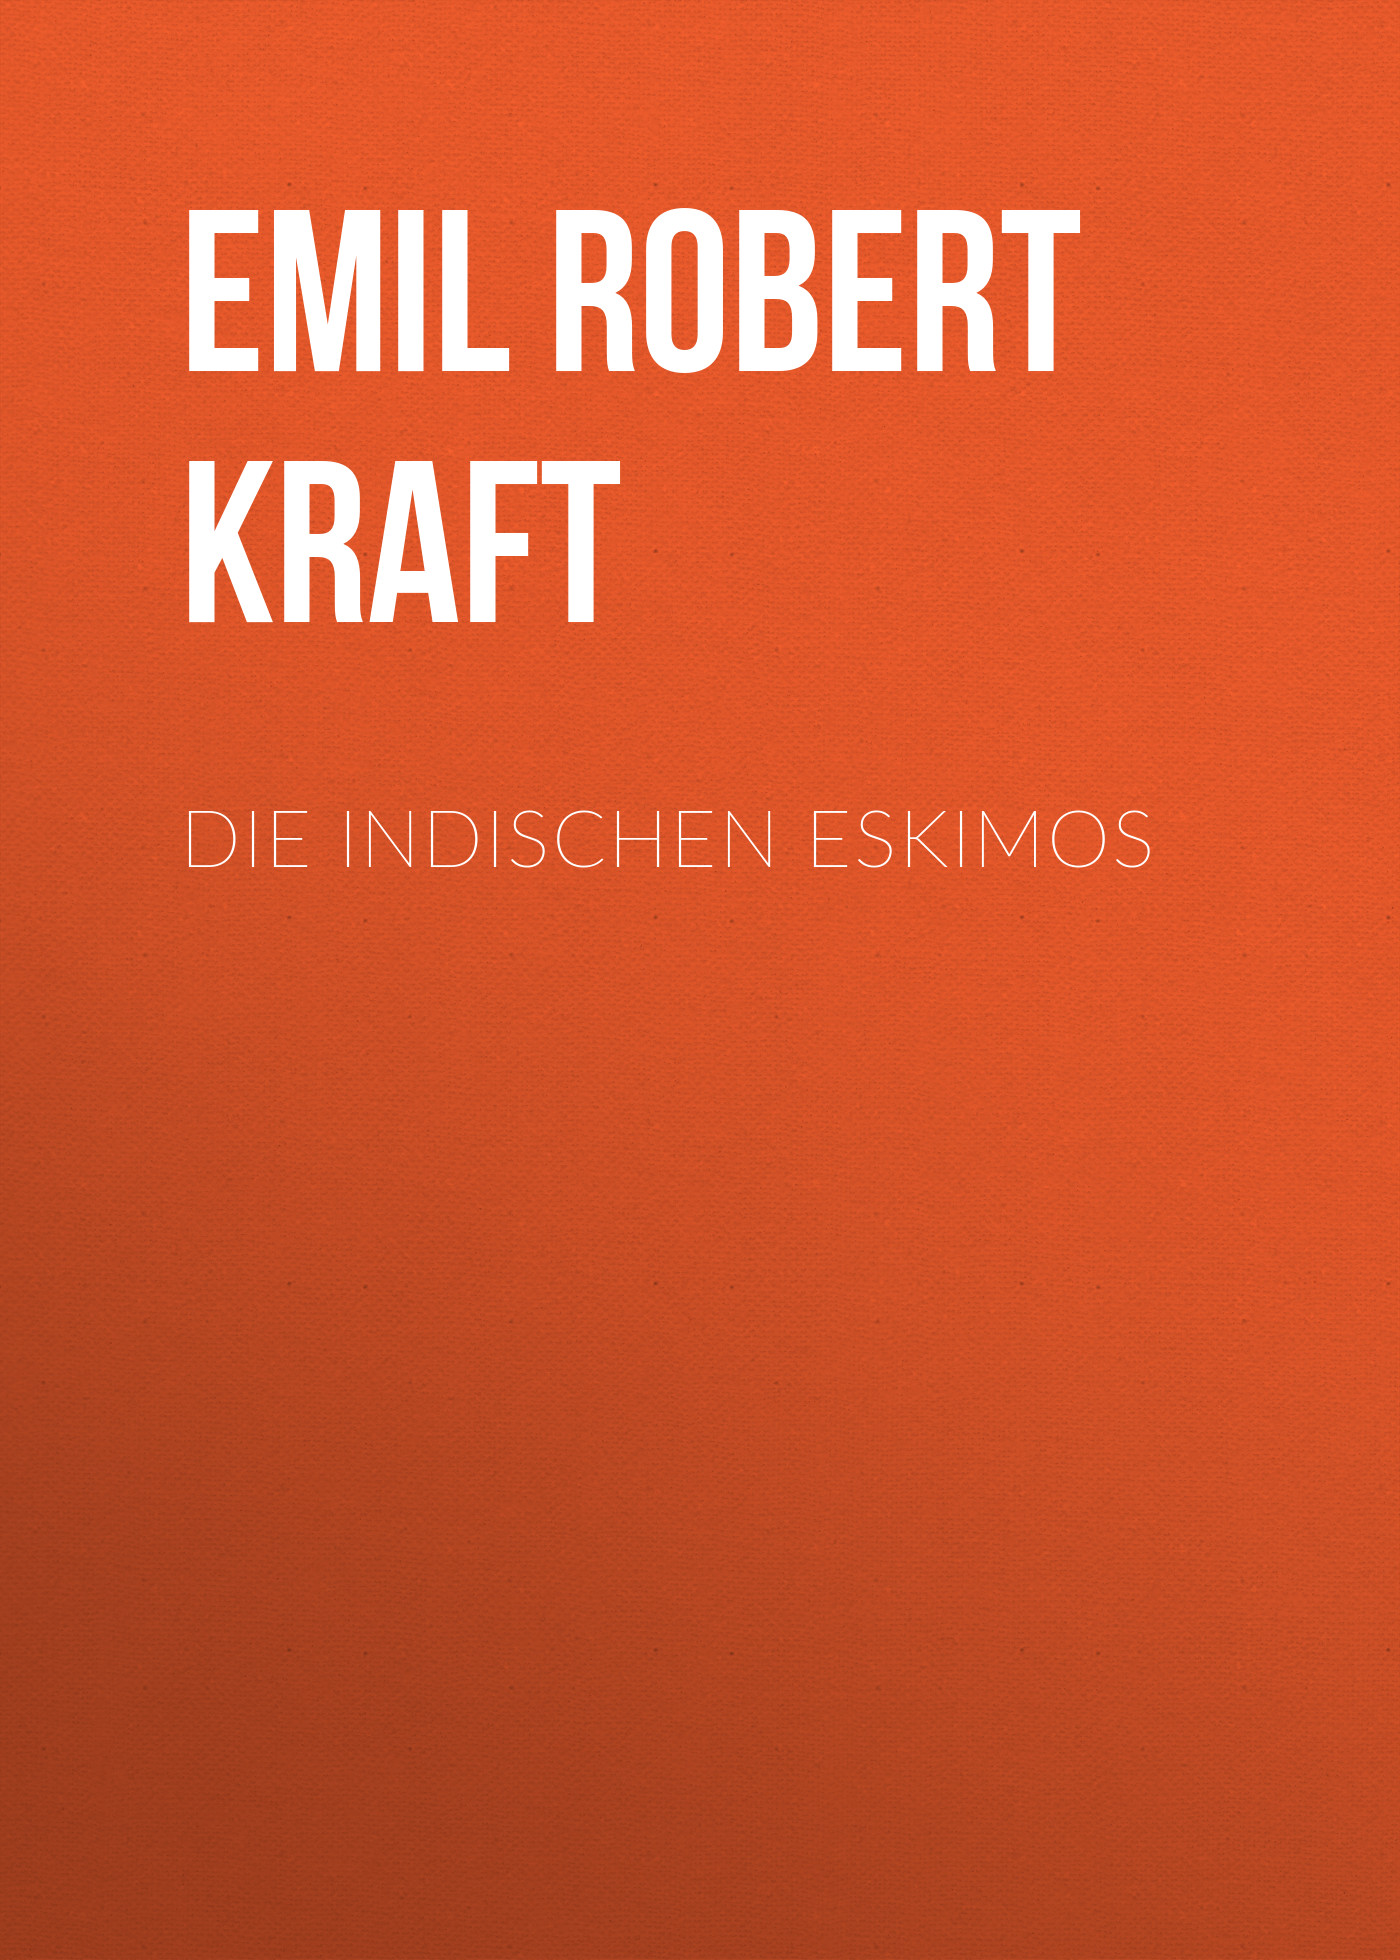 Книга Die indischen Eskimos из серии , созданная Emil Robert Kraft, может относится к жанру Зарубежная классика. Стоимость электронной книги Die indischen Eskimos с идентификатором 48633196 составляет 0 руб.